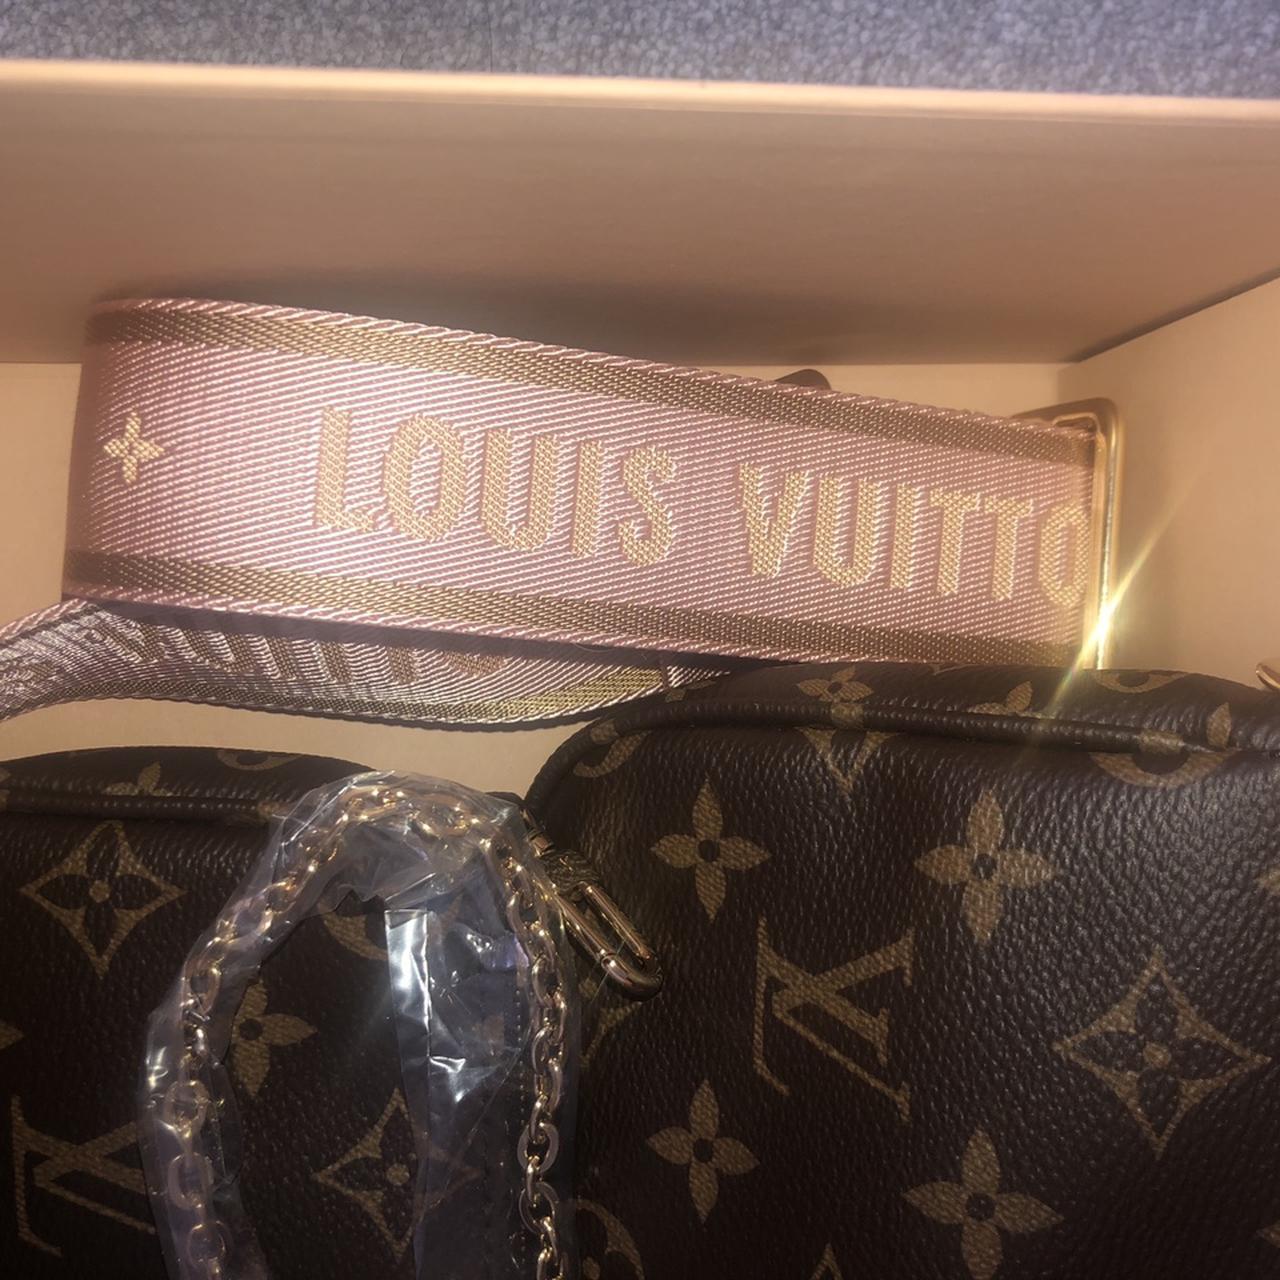 Louis Vuitton Bag Multi Pochette M44813 • AUTHENTIC - Depop